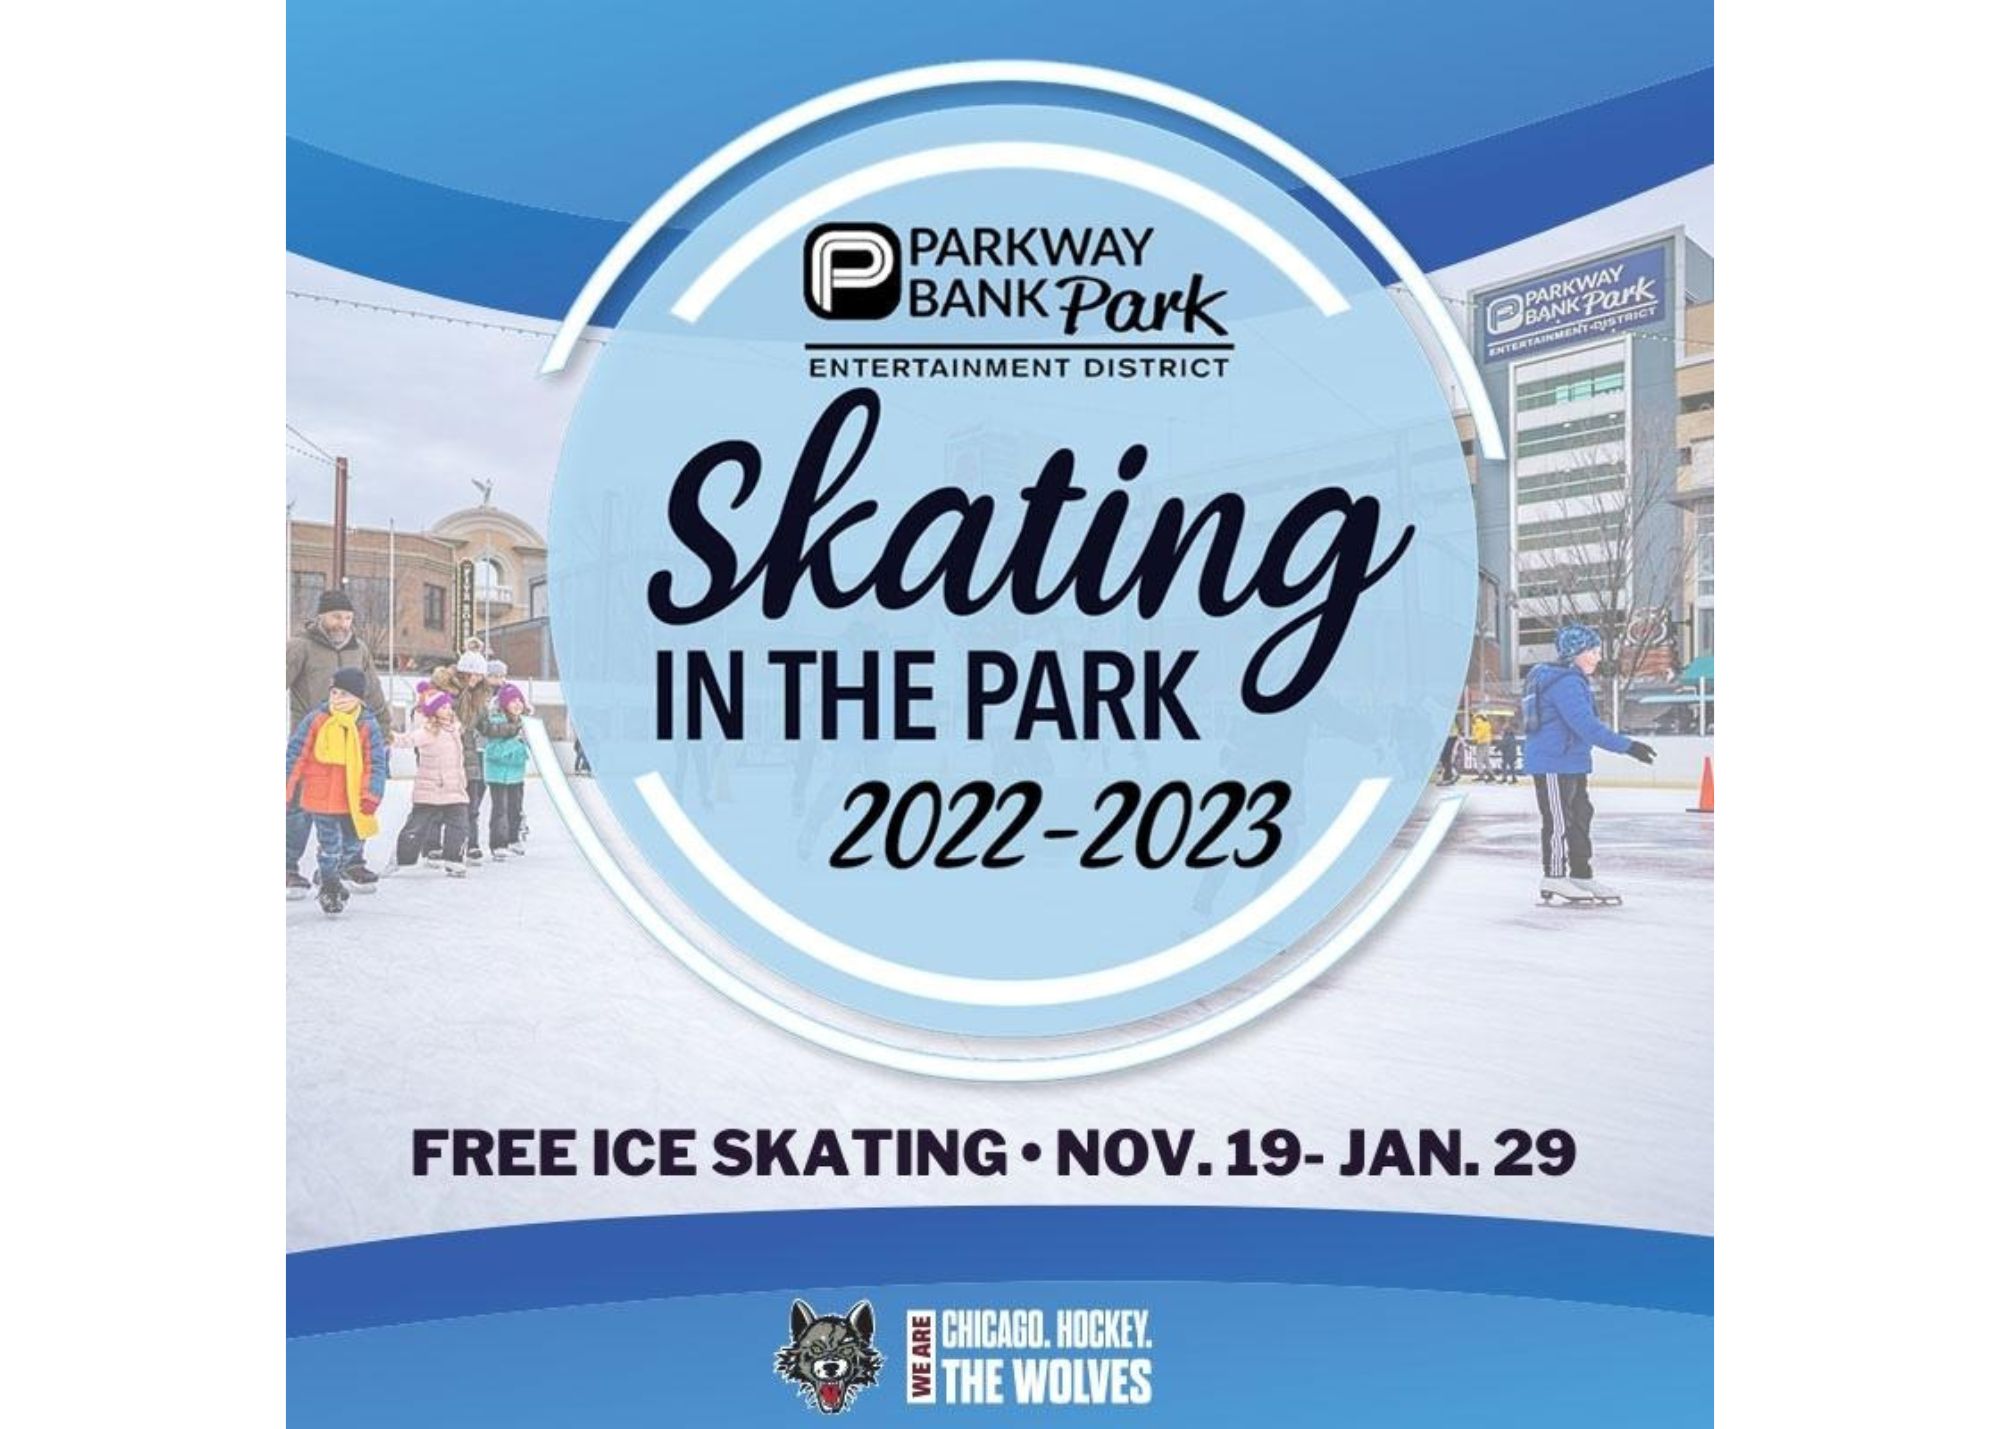 “Skating in the Park” at Parkway Bank Park